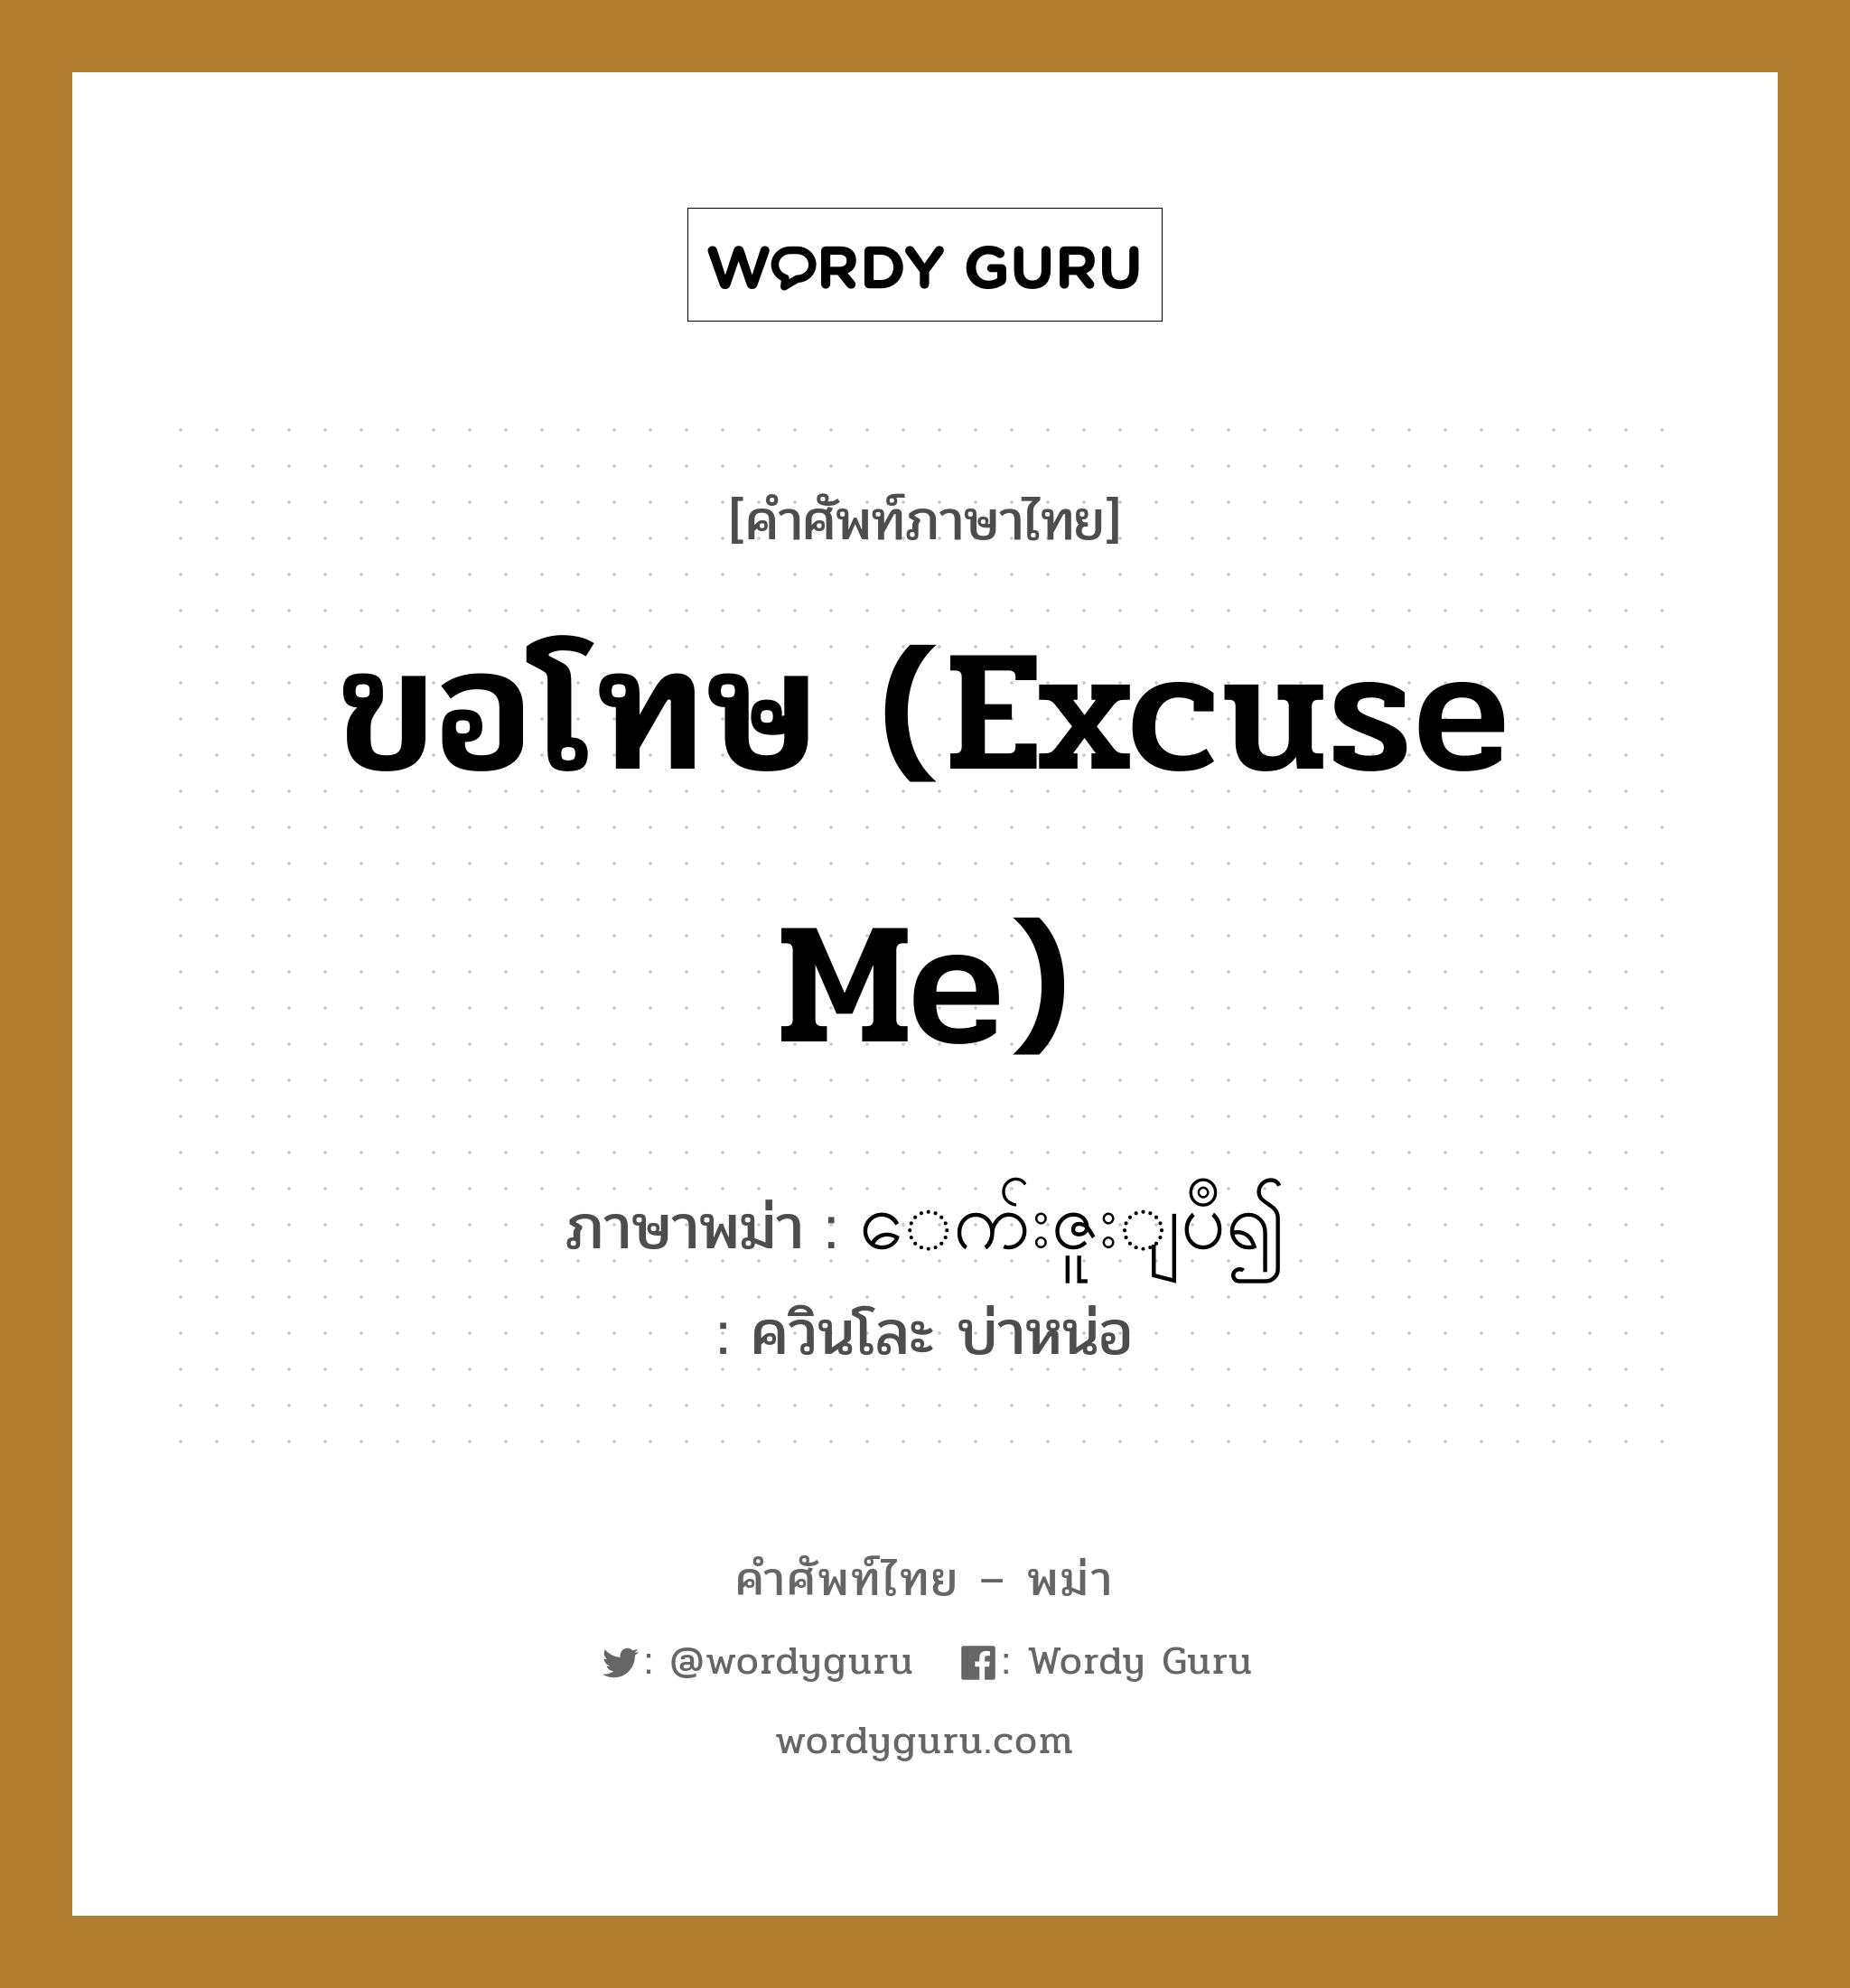 ขอโทษ (Excuse me) แปลว่า? คำศัพท์ในกลุ่มประเภท ทั่วไป, คำศัพท์ภาษาไทย - พม่า ขอโทษ (Excuse me) ภาษาพม่า ေက်းဇူးျပဳ၍ หมวด ทั่วไป ควินโละ บ่าหน่อ หมวด ทั่วไป